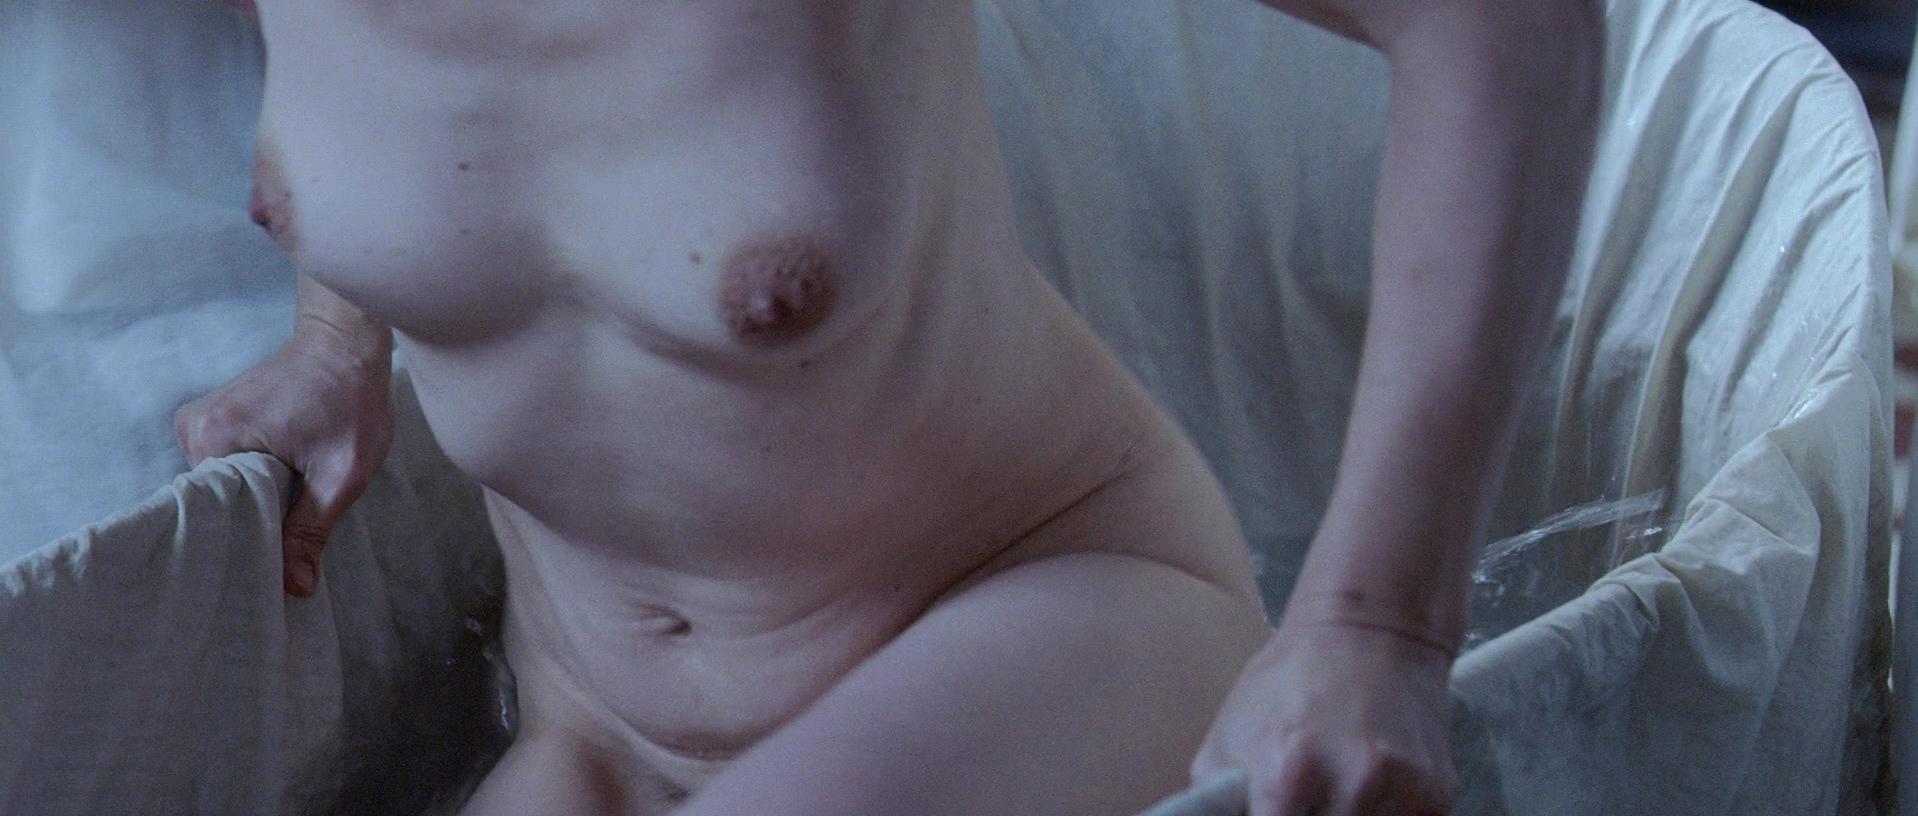 Juliette Binoche nude - Camille Claudel 1915 (2013)